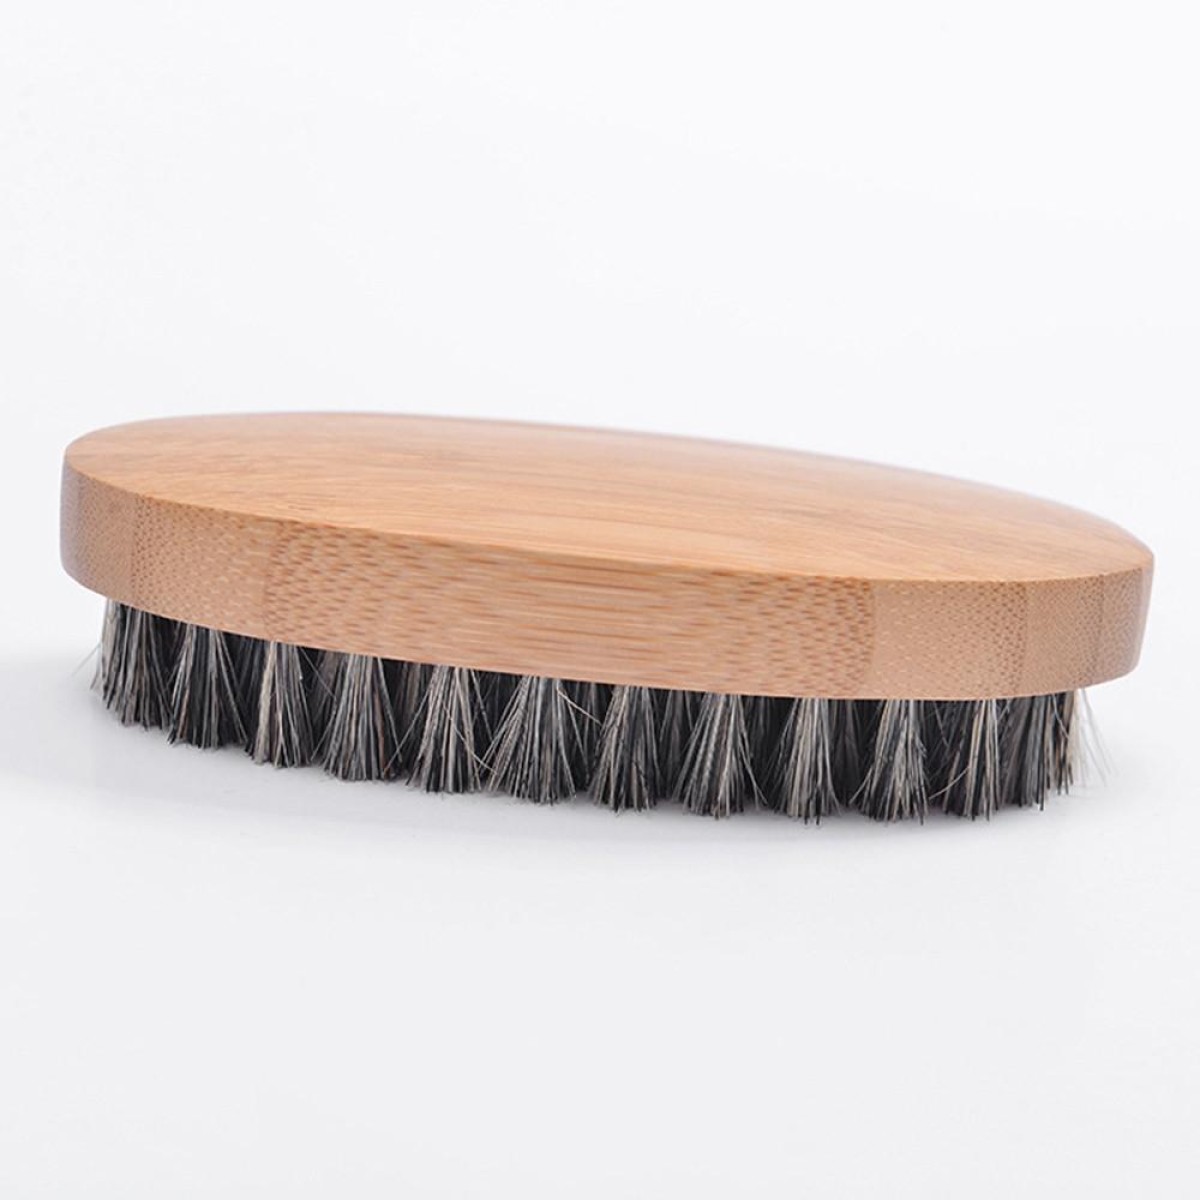 Men Beard Care Brush Hardwood Handle Wild Boar Bristle Comb